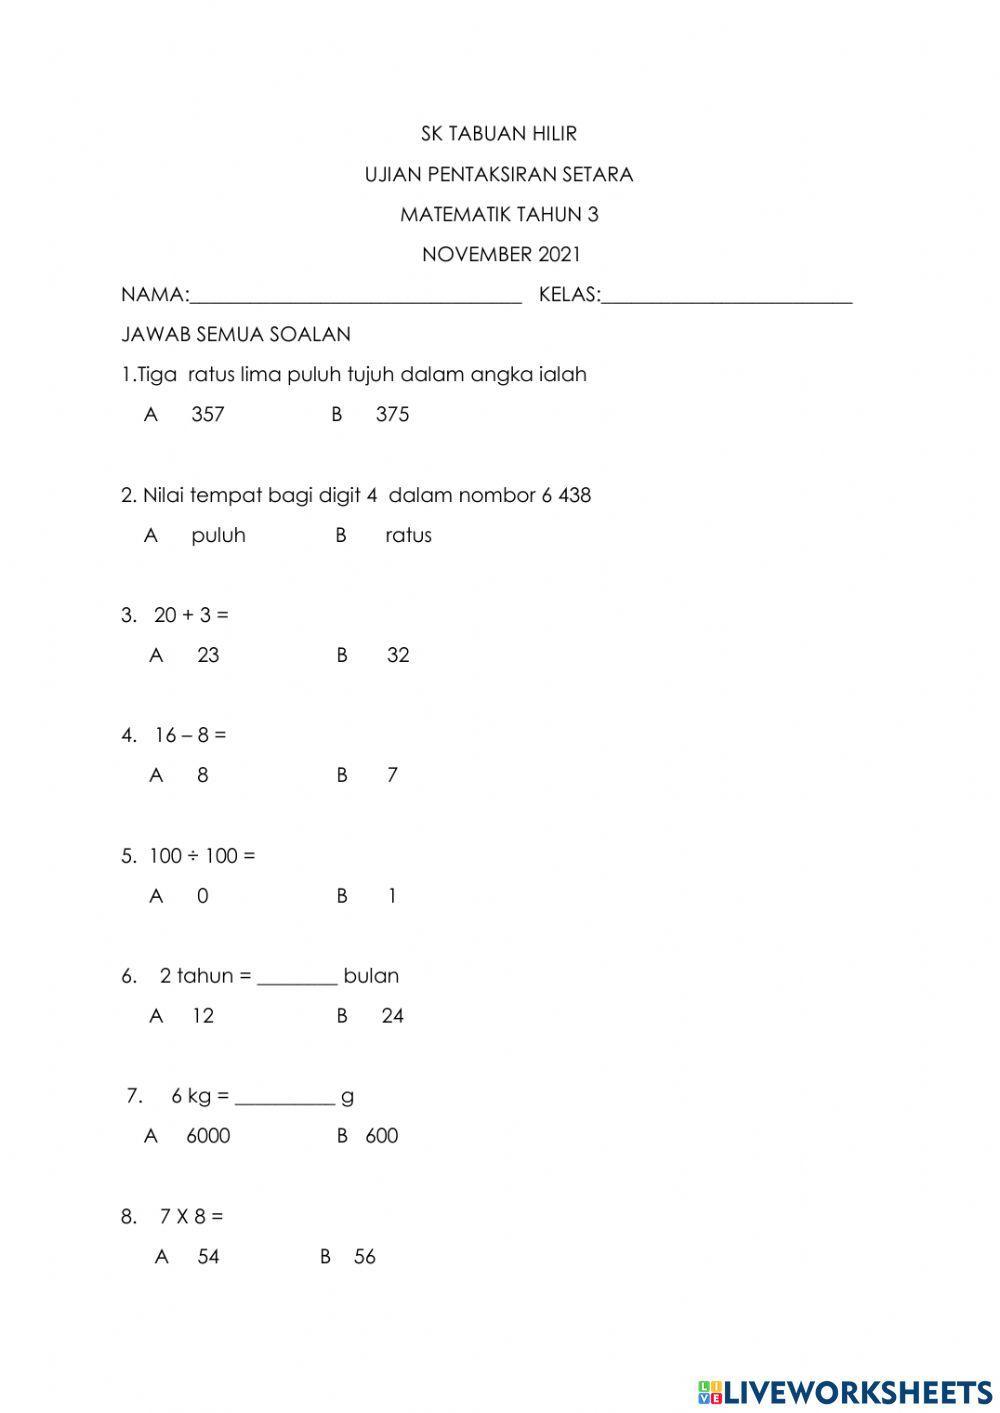 Ujian pentaksiran matematik tahun 3